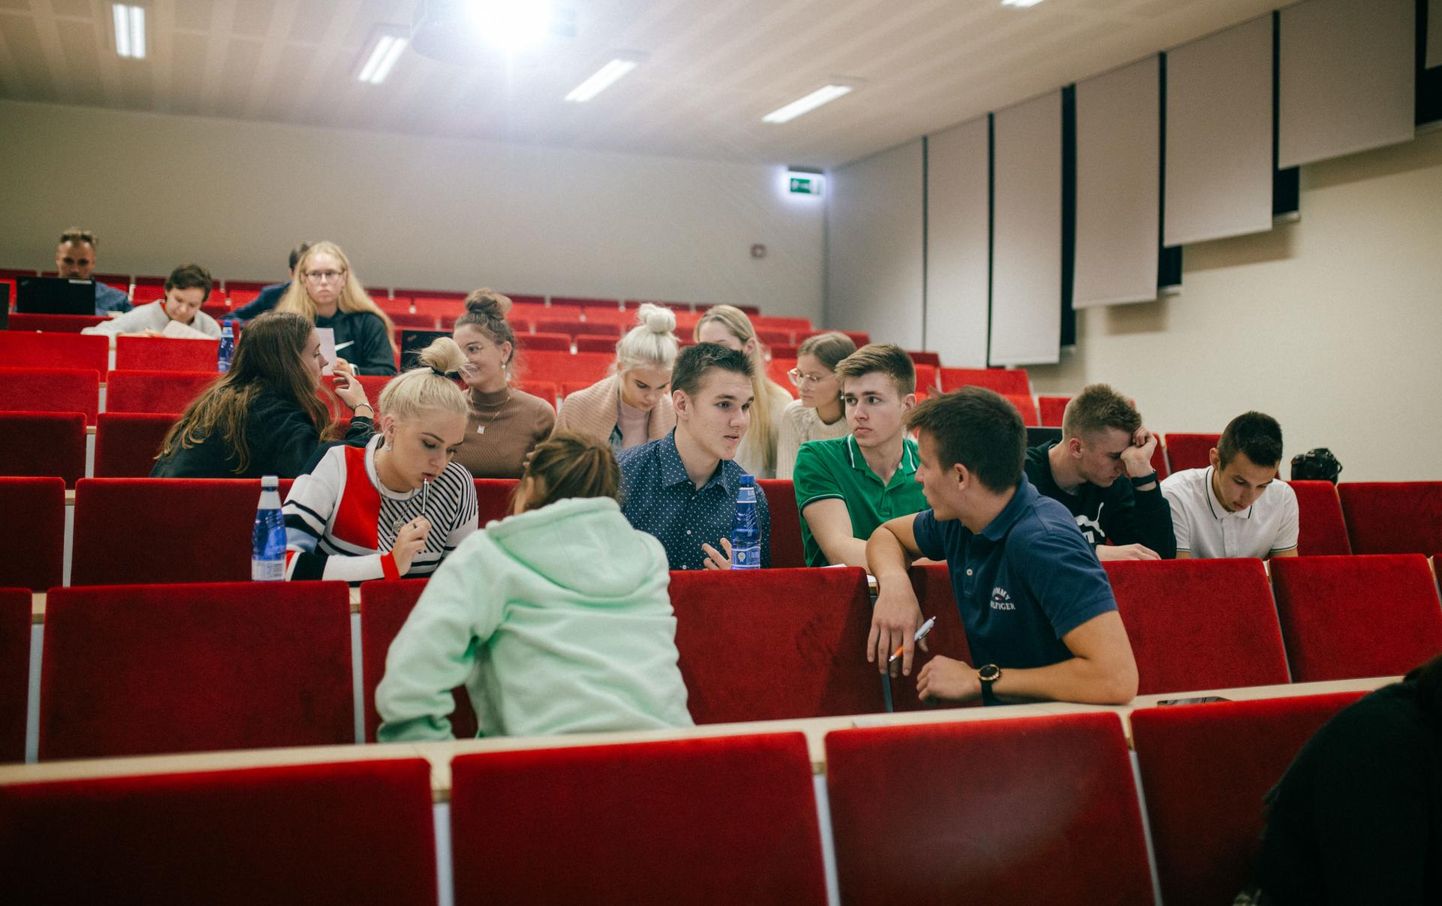 Viljandi noortevolikogu jagas välkvoorus välja 2500 eurot, et toetada noorte põnevaid ideid ja tegevust.